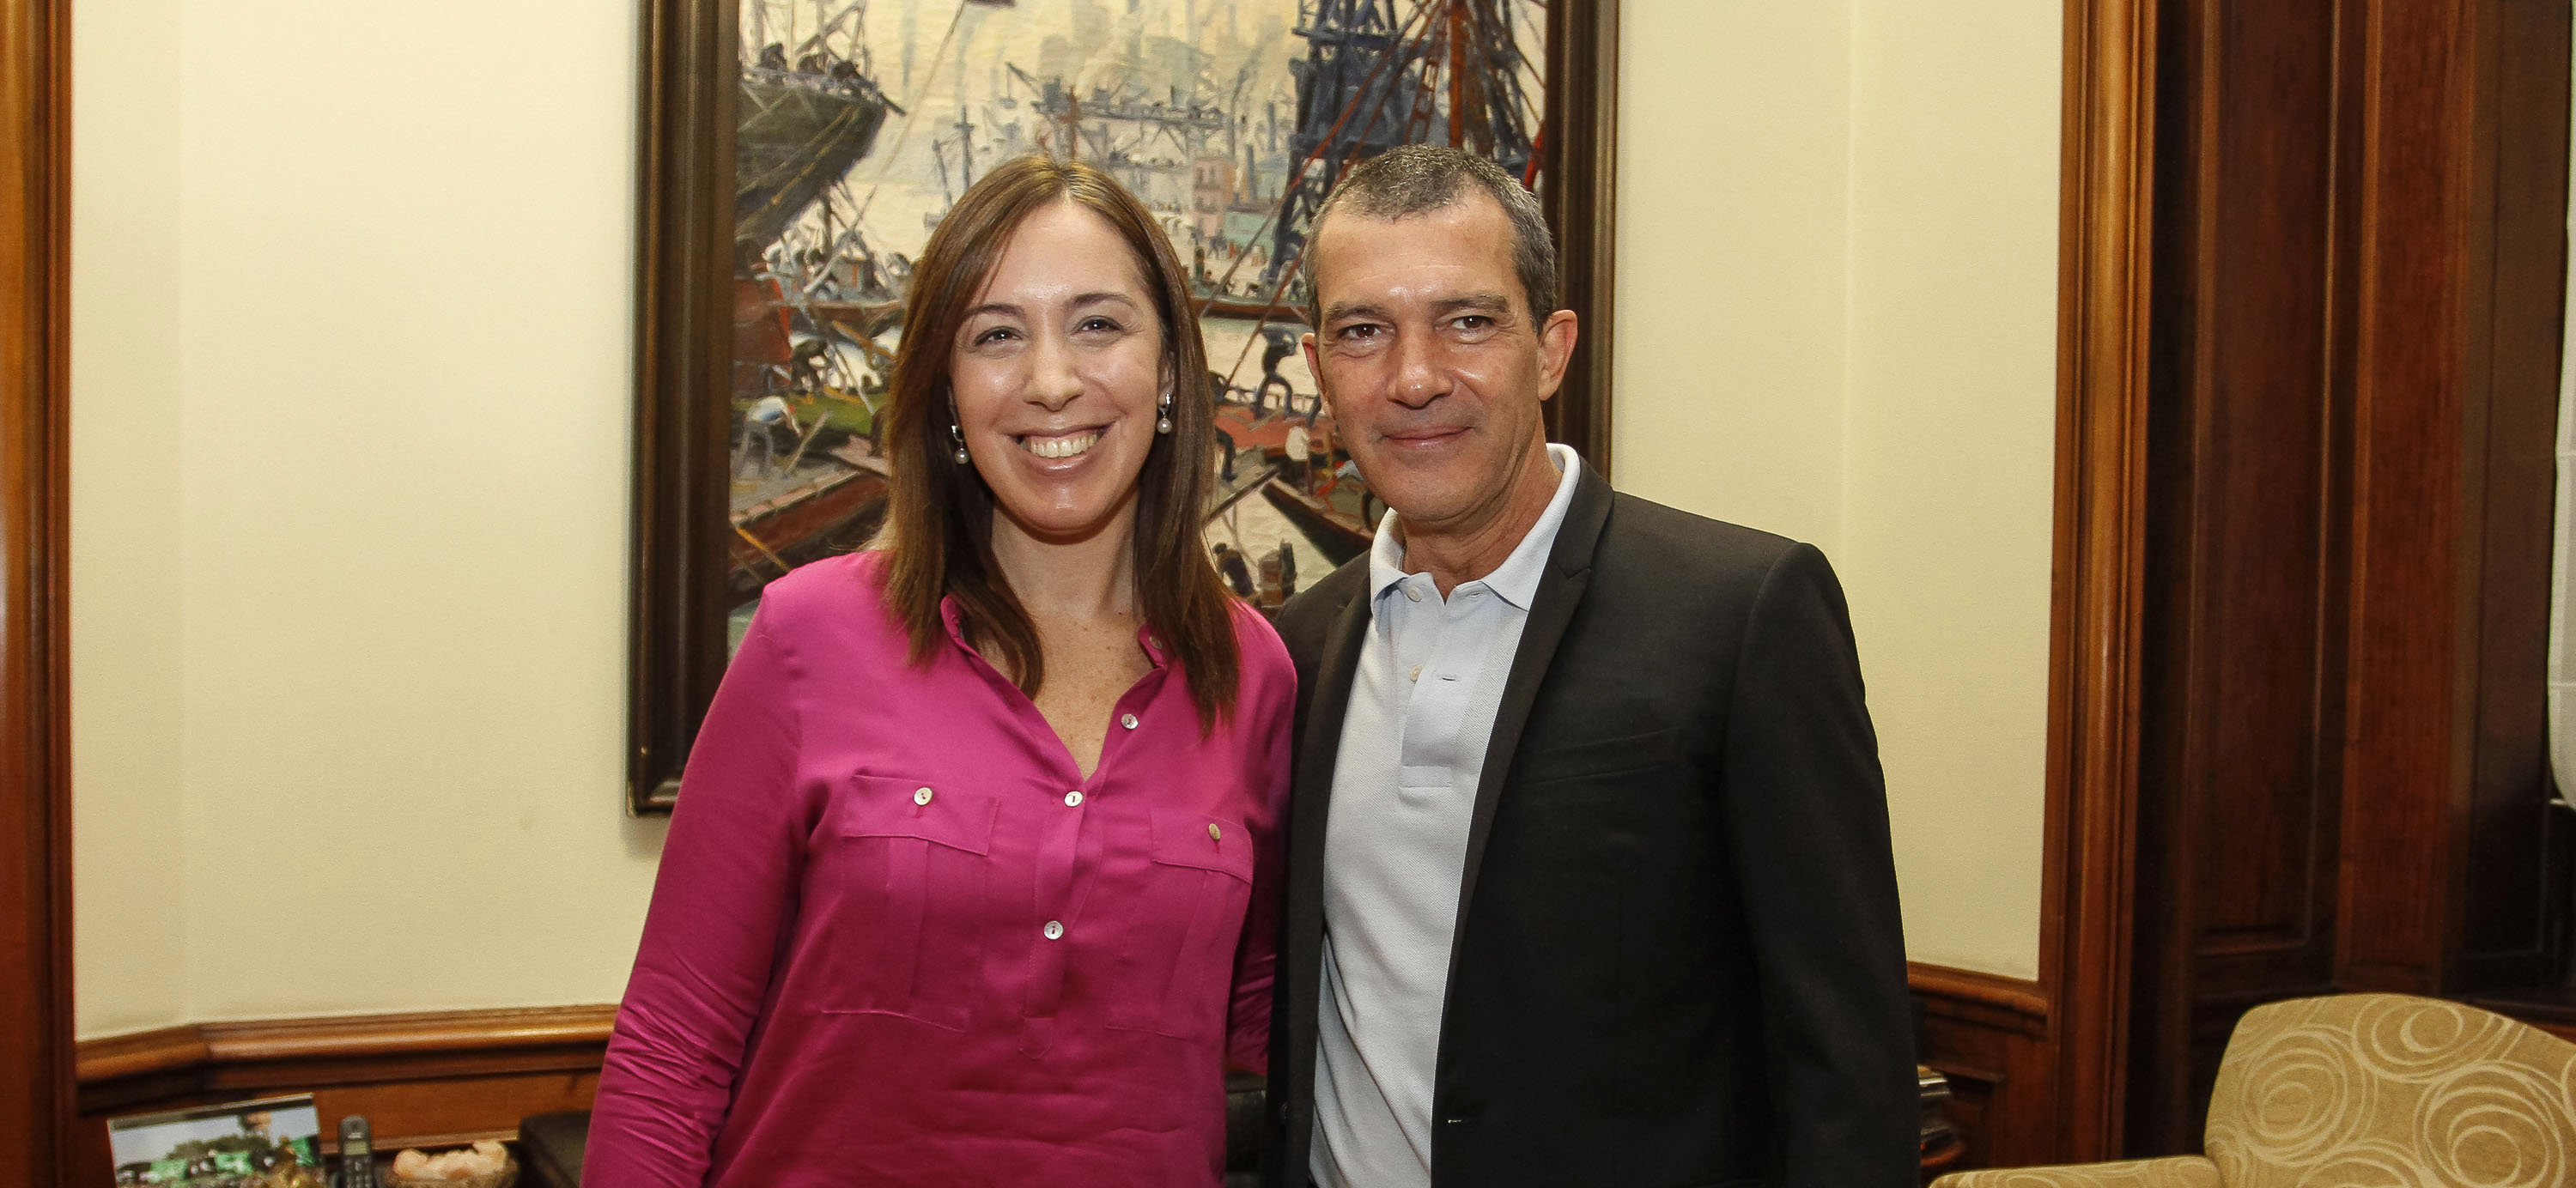 Antonio Banderas fue distinguido por la Legislatura Porteña